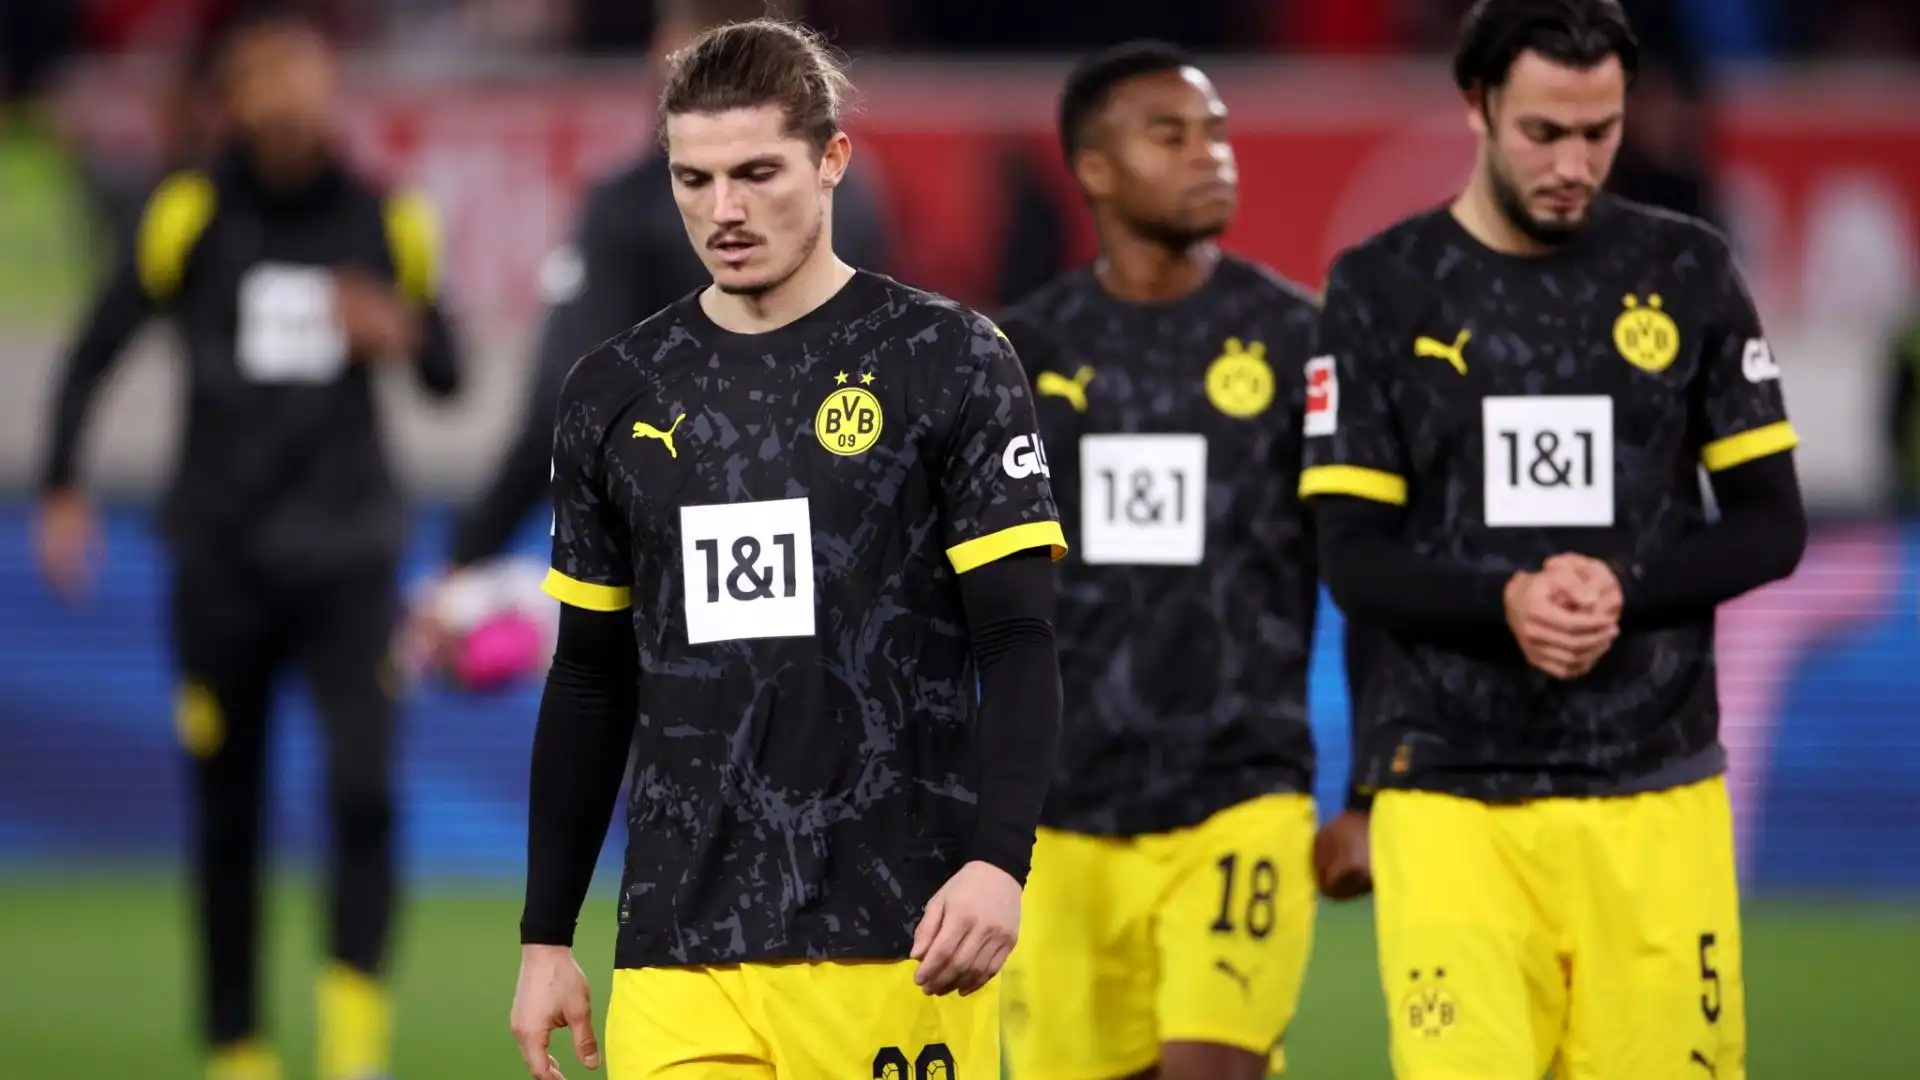 Per il Borussia Dortmund sarebbe stato importantissimo vincere ai fini della classifica